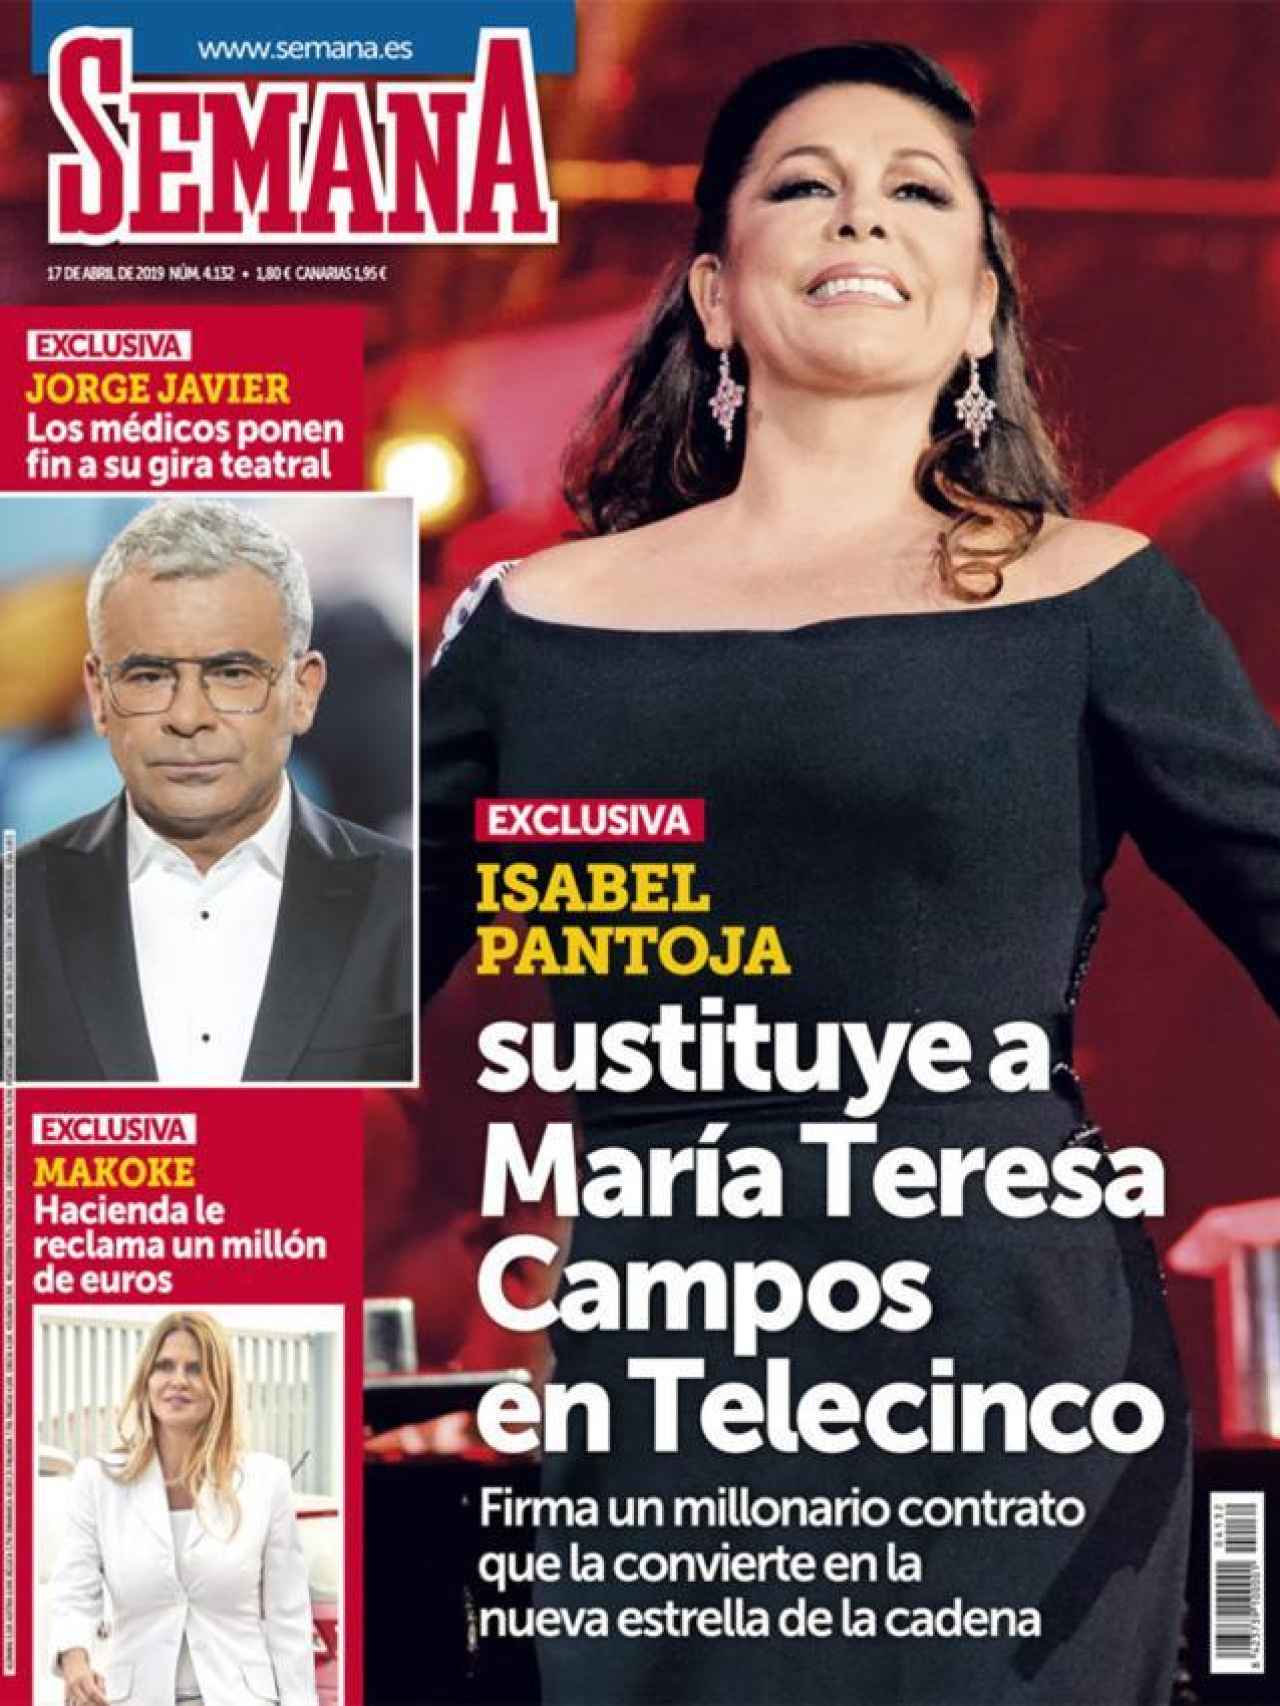 Portada de la revista 'Semana' donde se afirma que Isabel Pantoja sustituye a María Teresa Campos.